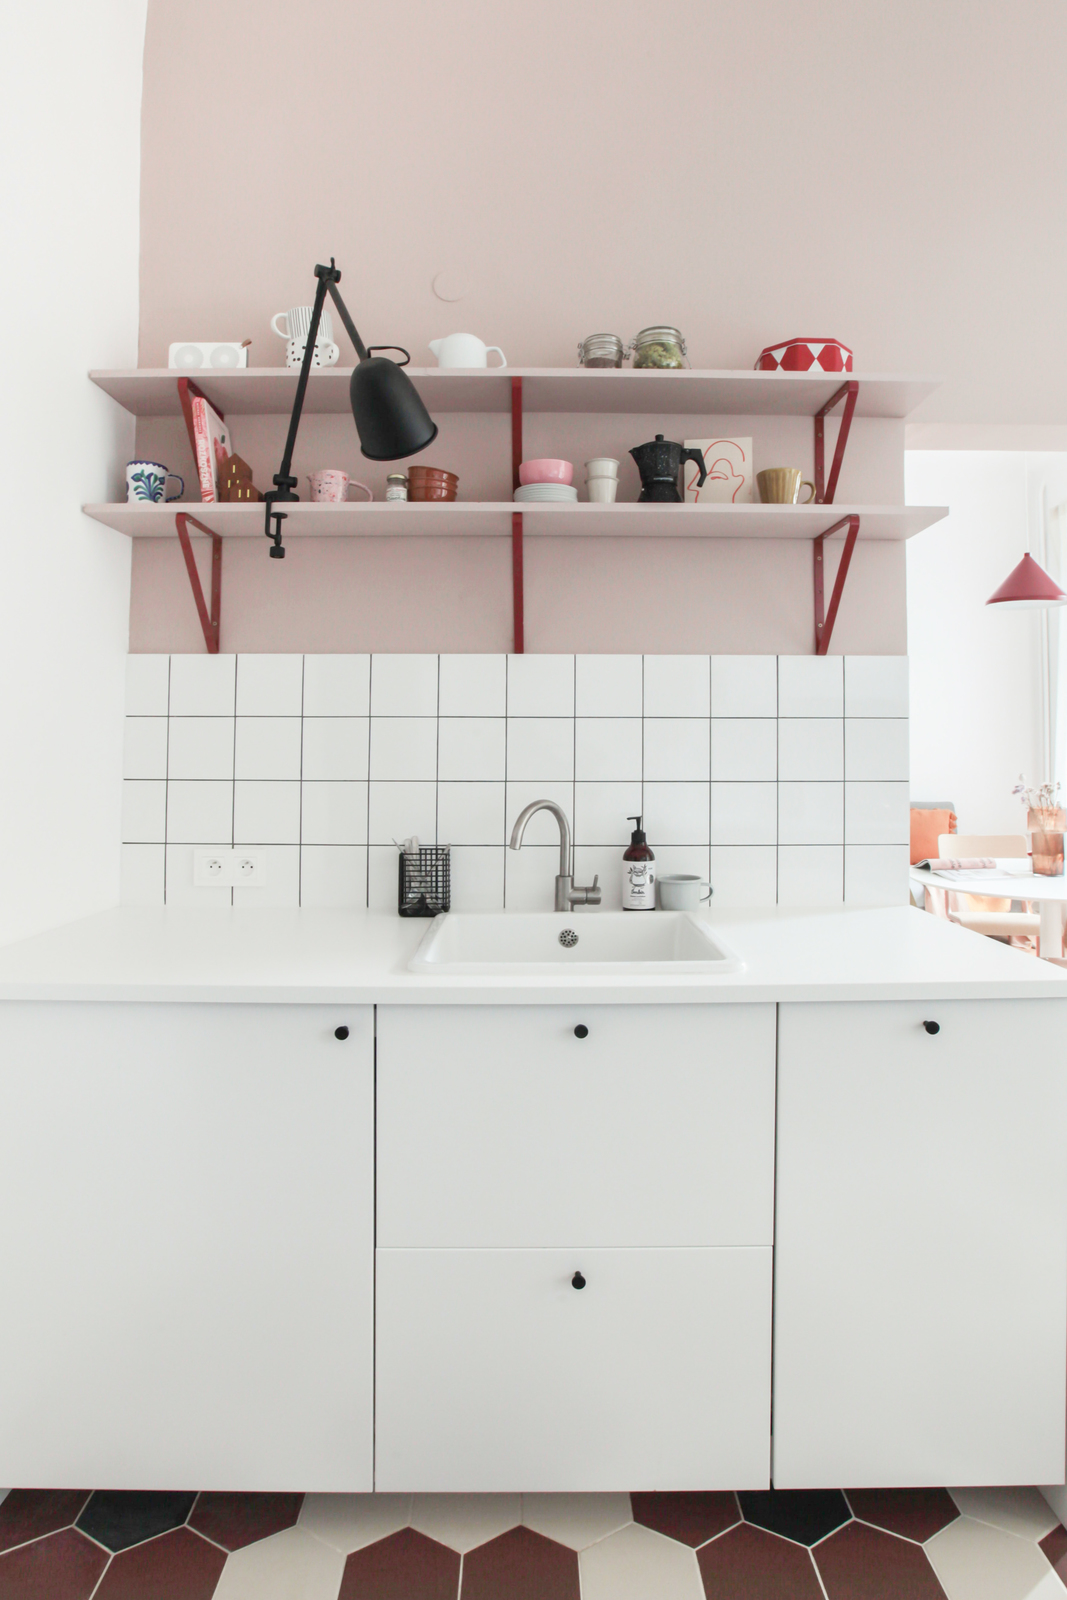 Khu vực bồn rửa chén bát tuy nhỏ nhưng xinh xắn với tone màu trắng và hồng nữ tính, kết hợp backsplash ốp gạch mosaic trắng và hệ thống kệ mở phía trên cho cái nhìn gọn gàng, sạch sẽ.